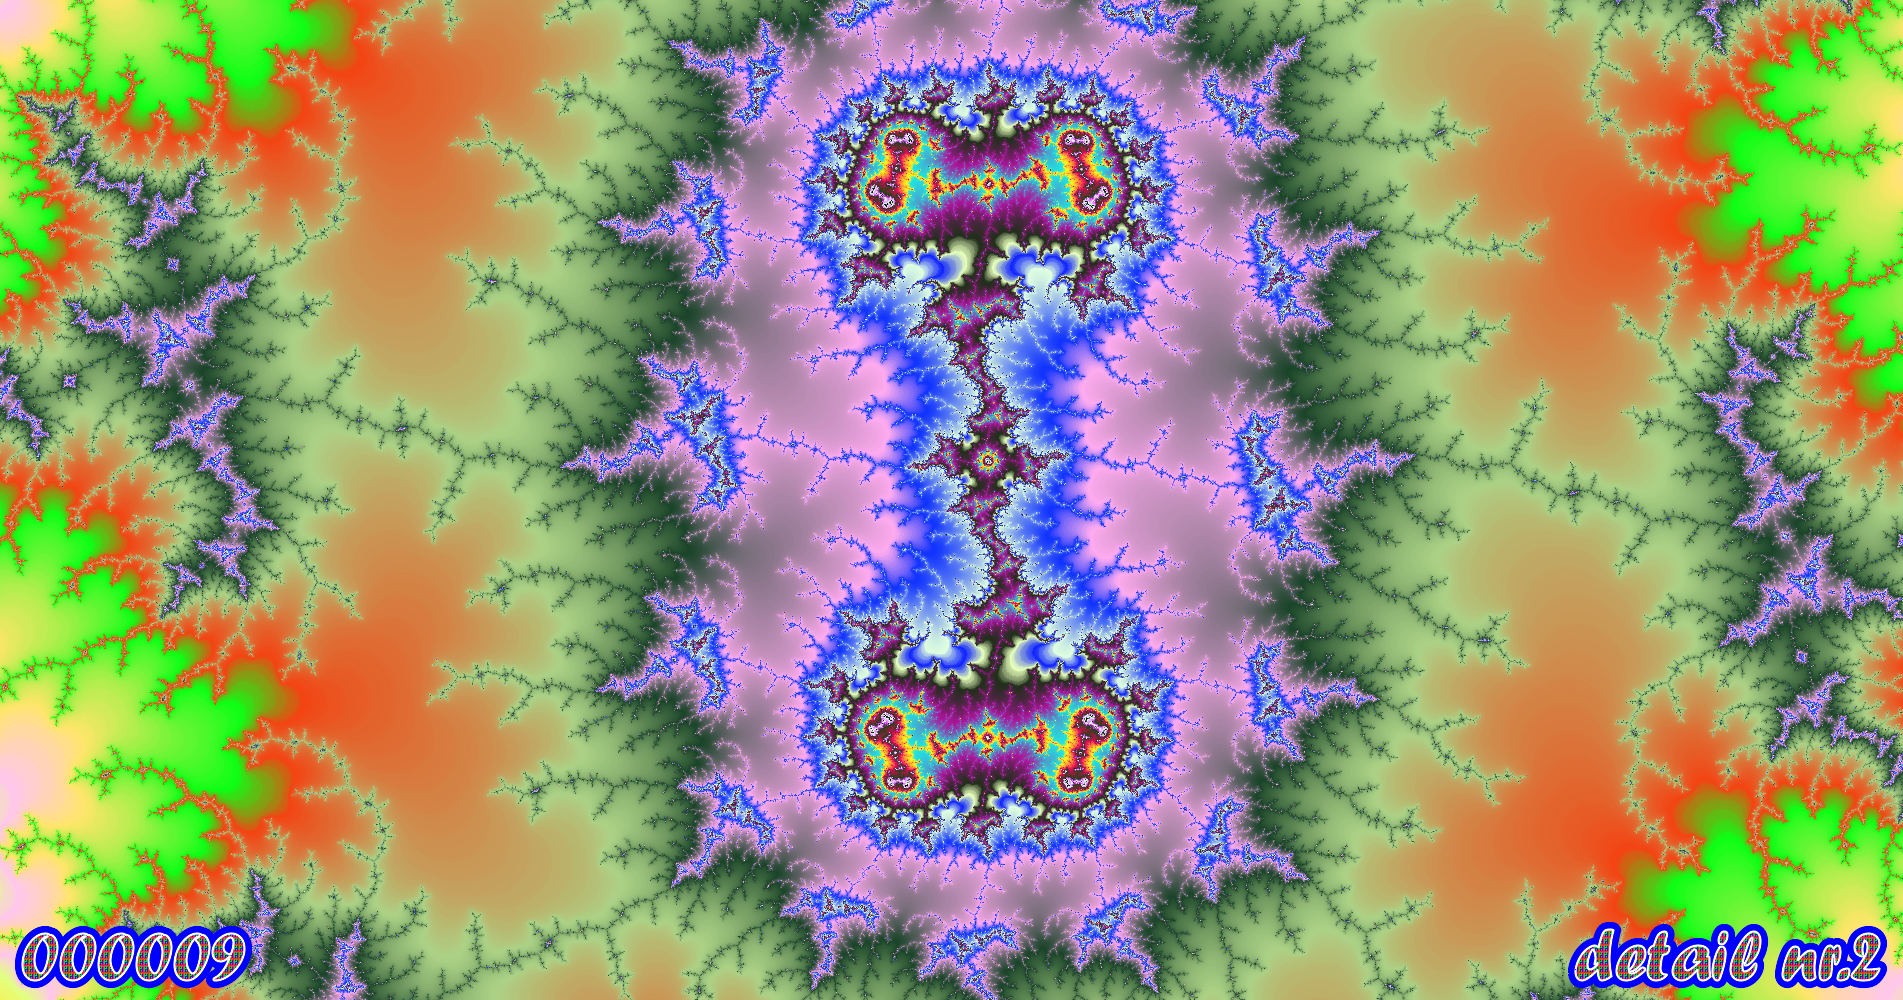 fractal kunst nr. 000009 ,detail nr. 2